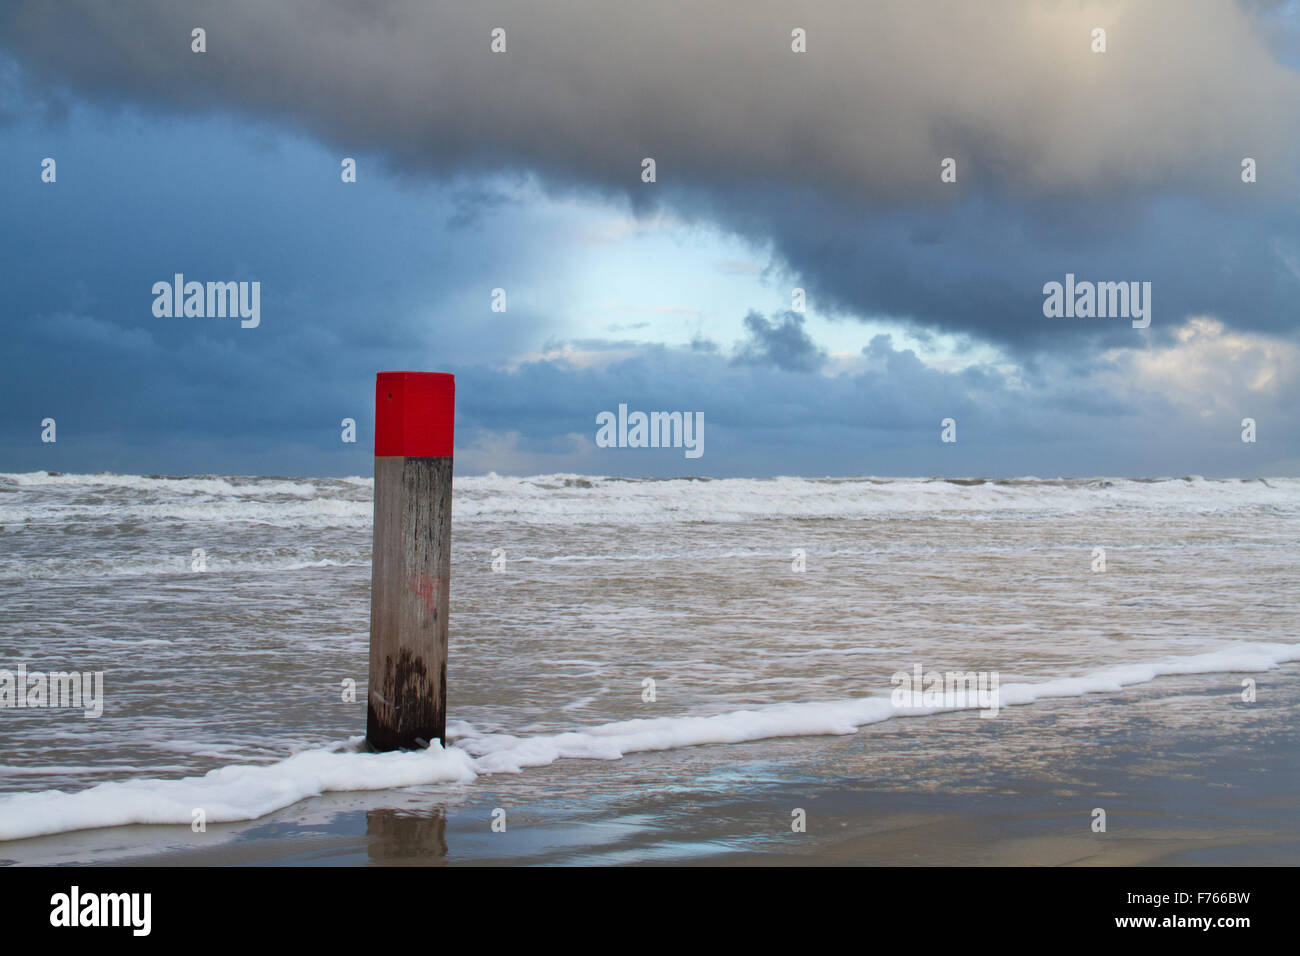 Con la cabeza roja de polo de playa en marea alta bajo una nube oscura Foto de stock